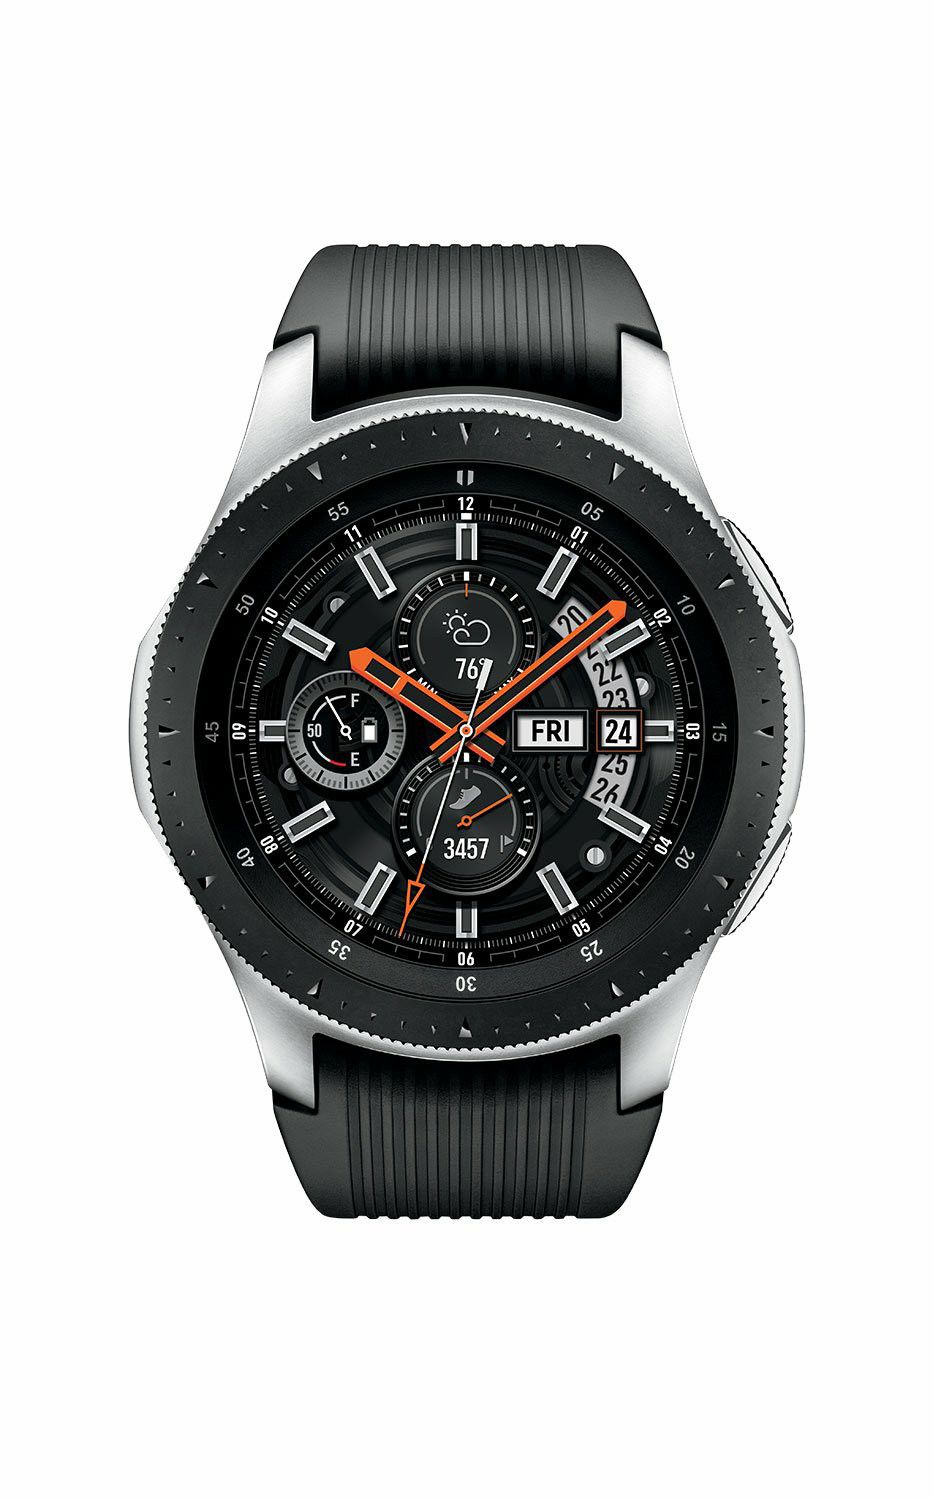 Samsung Galaxy Gear 4 watch!